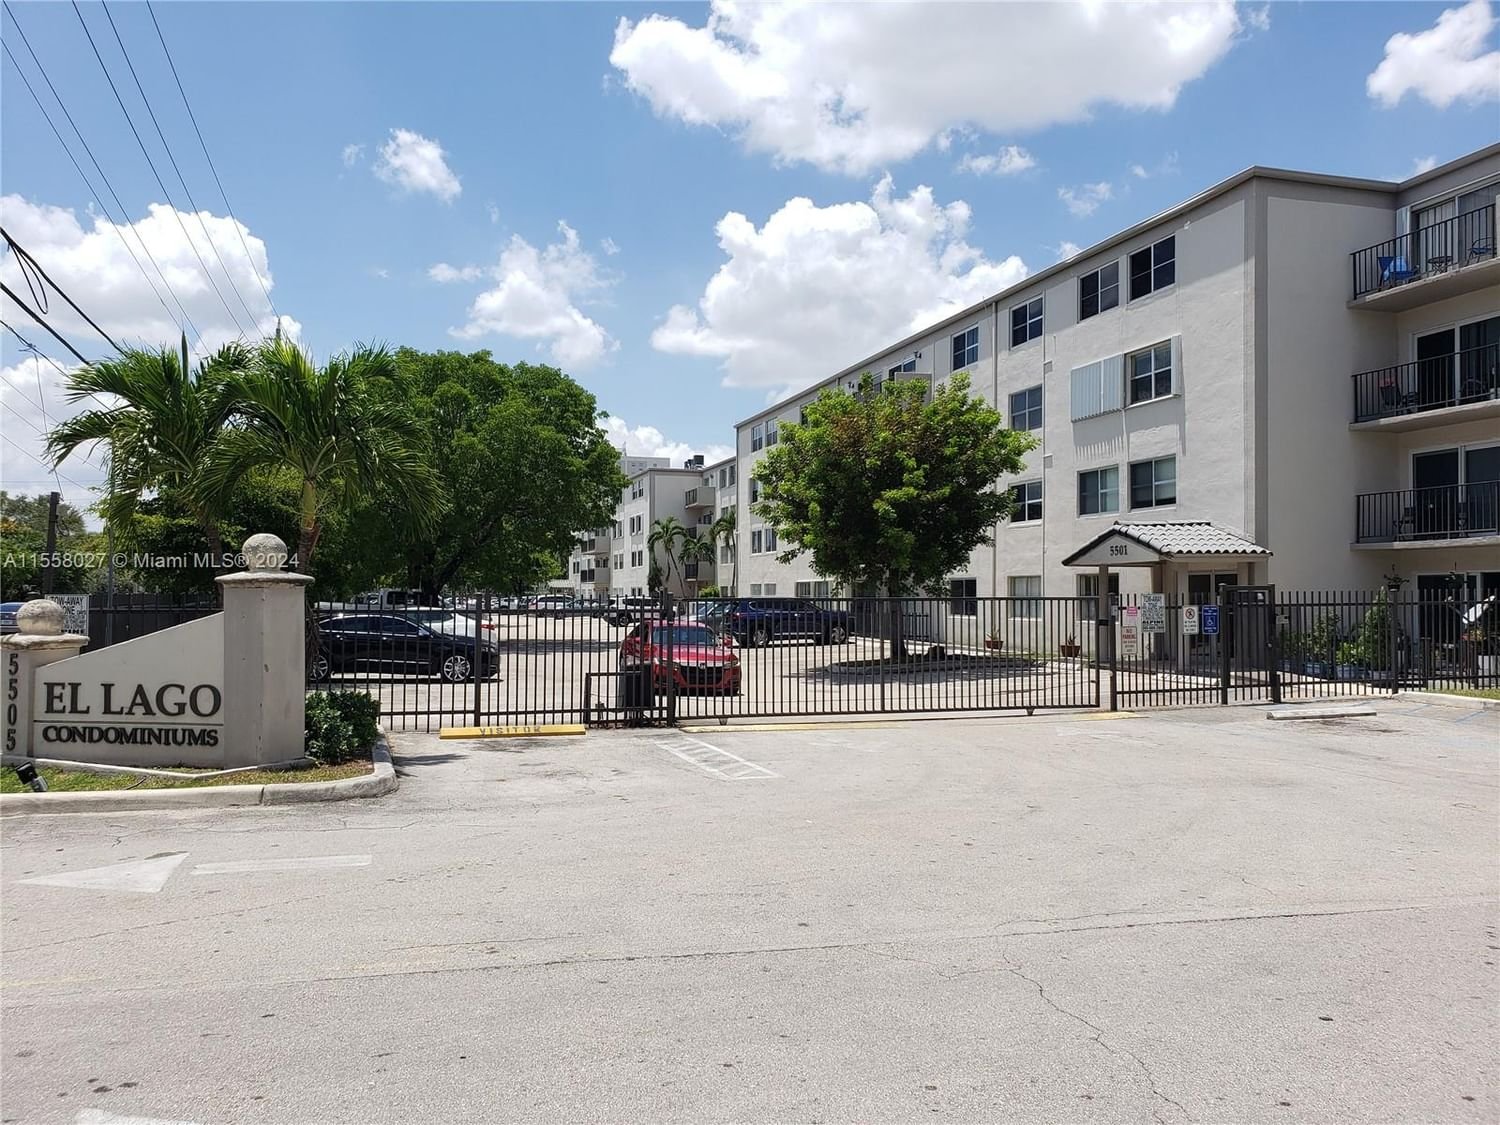 Real estate property located at 5505 7th St W103, Miami-Dade County, EL LAGO CONDO, Miami, FL